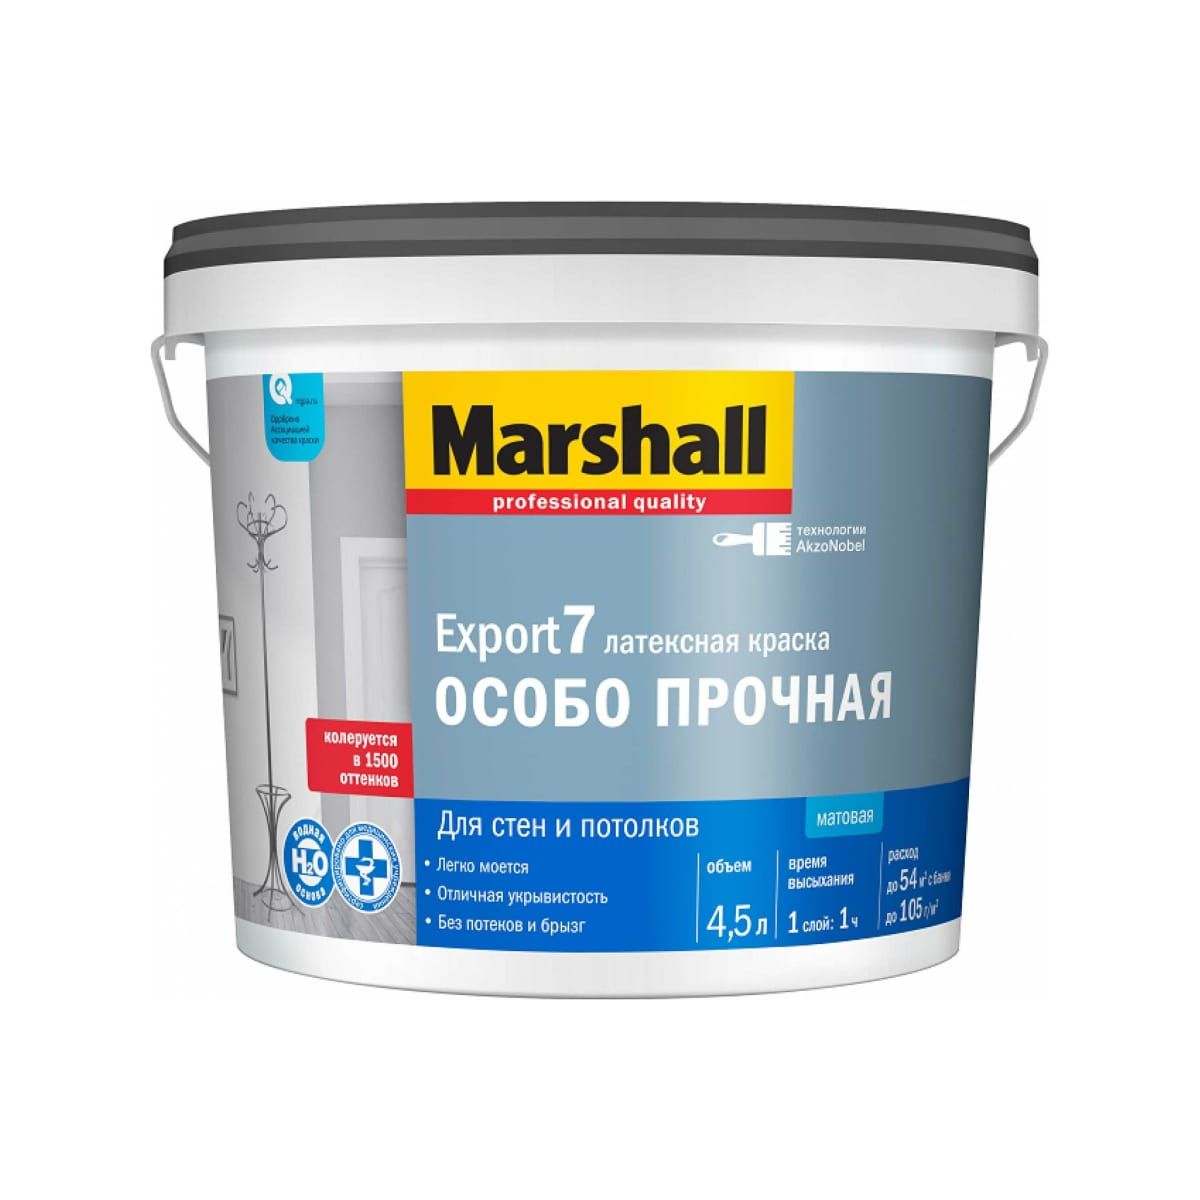 Краска Marshall Export 7 латексная, матовая, BC, 4,5 л латексная краска ареал вд ак 0106 фасадная c base 2 5 л а 034